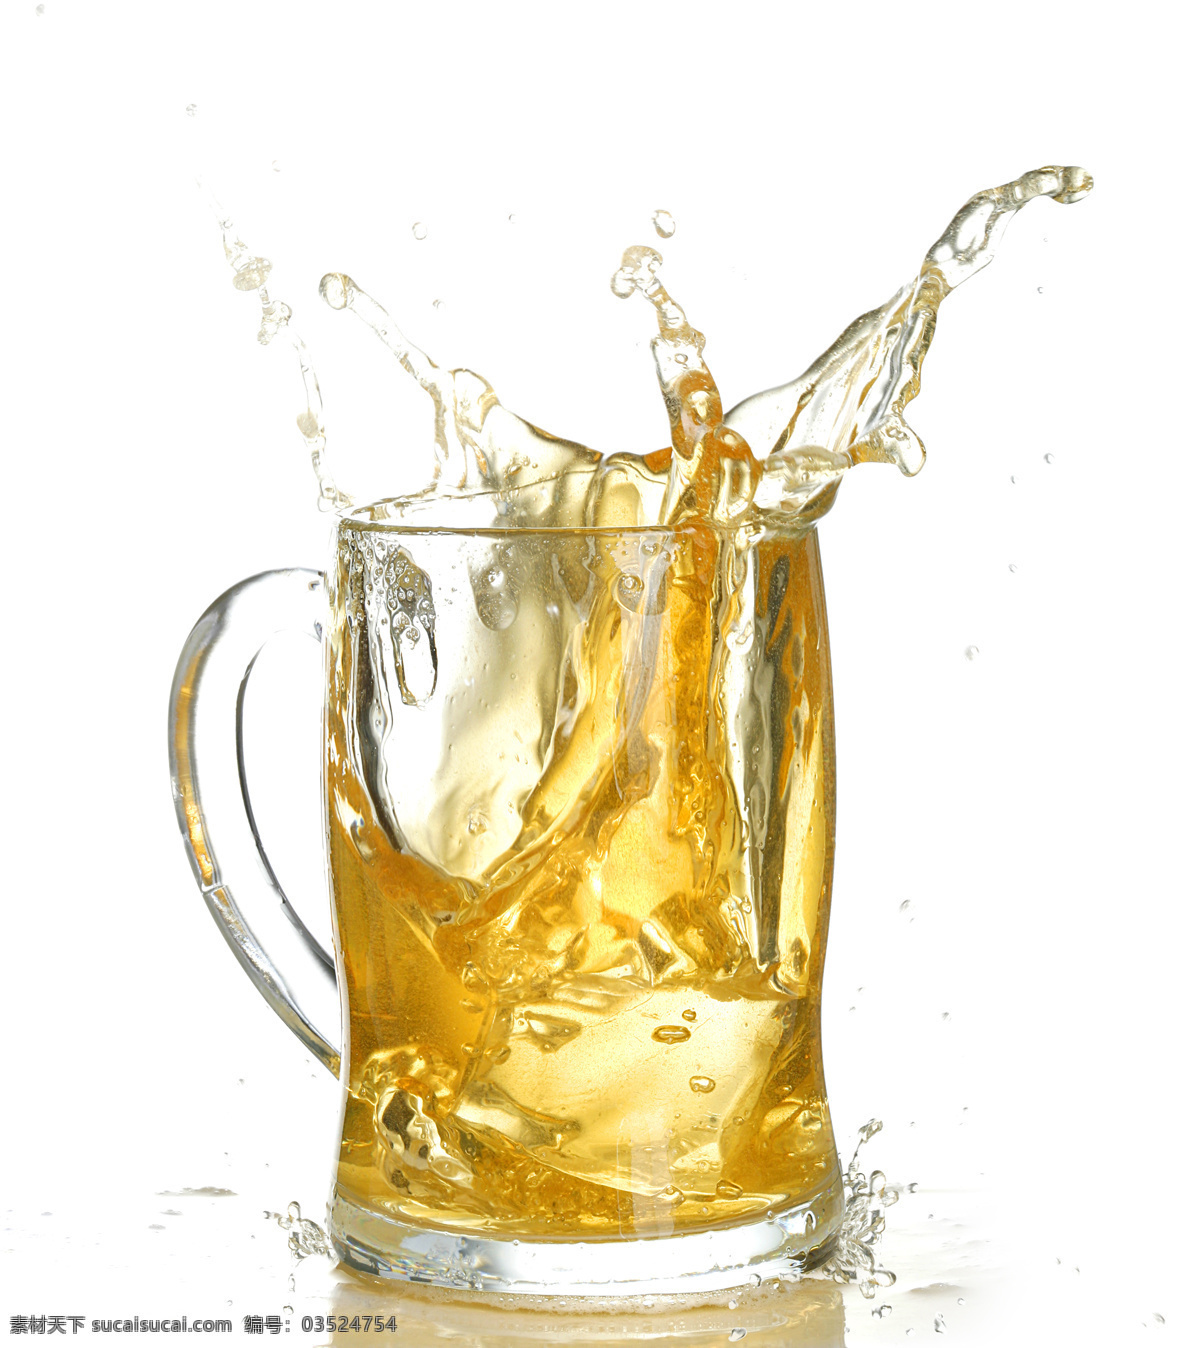 酒 啤酒 干杯 酒杯 啤酒杯 盛满 玻璃酒杯 泡沫溢出 泡沫 清凉 清爽 酒类 摄影图片 高清图片素材